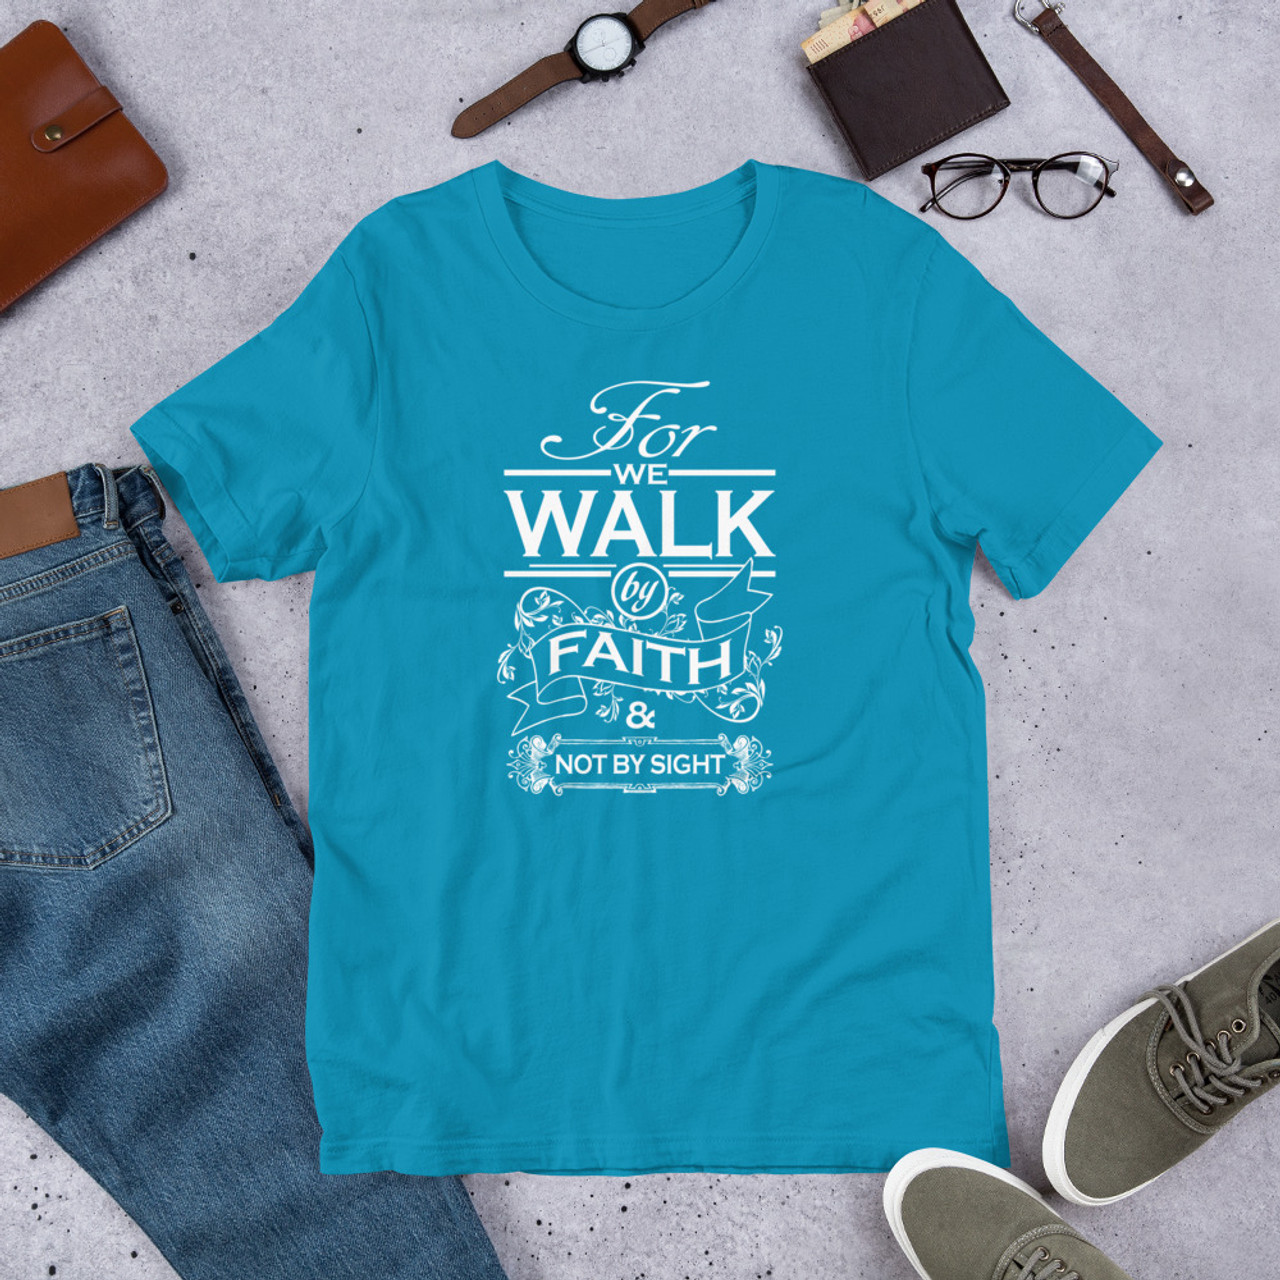 Aqua T-Shirt - Bella + Canvas 3001 Walk By Faith